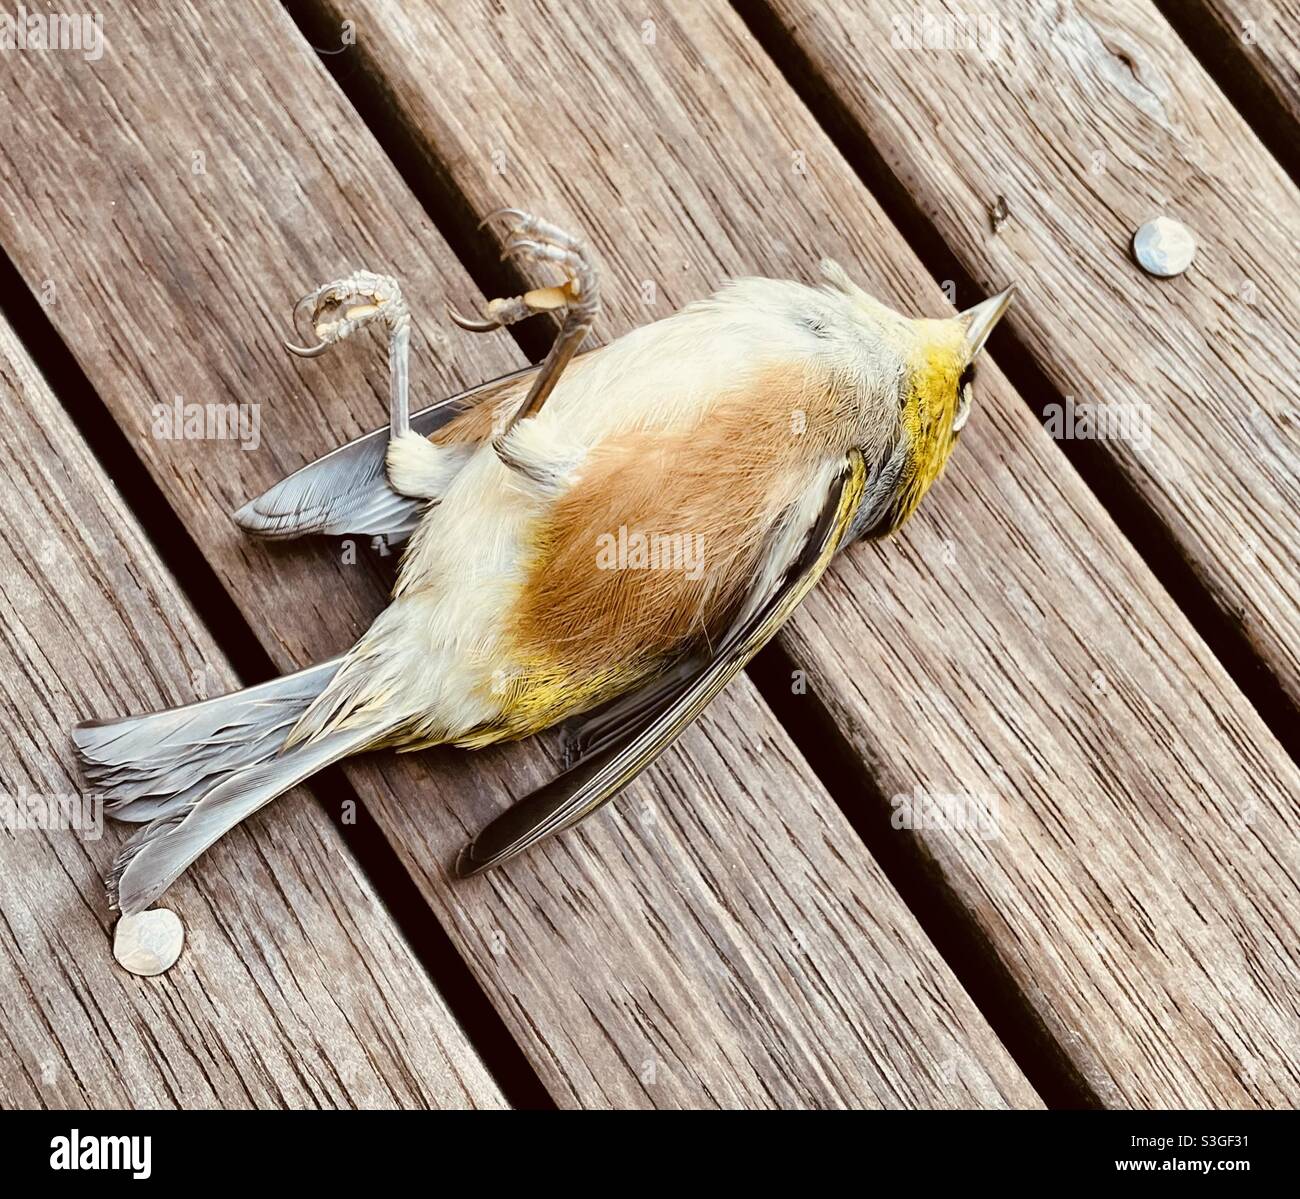 Toter Vogel, der auf einer Holzterrasse liegt Stockfoto